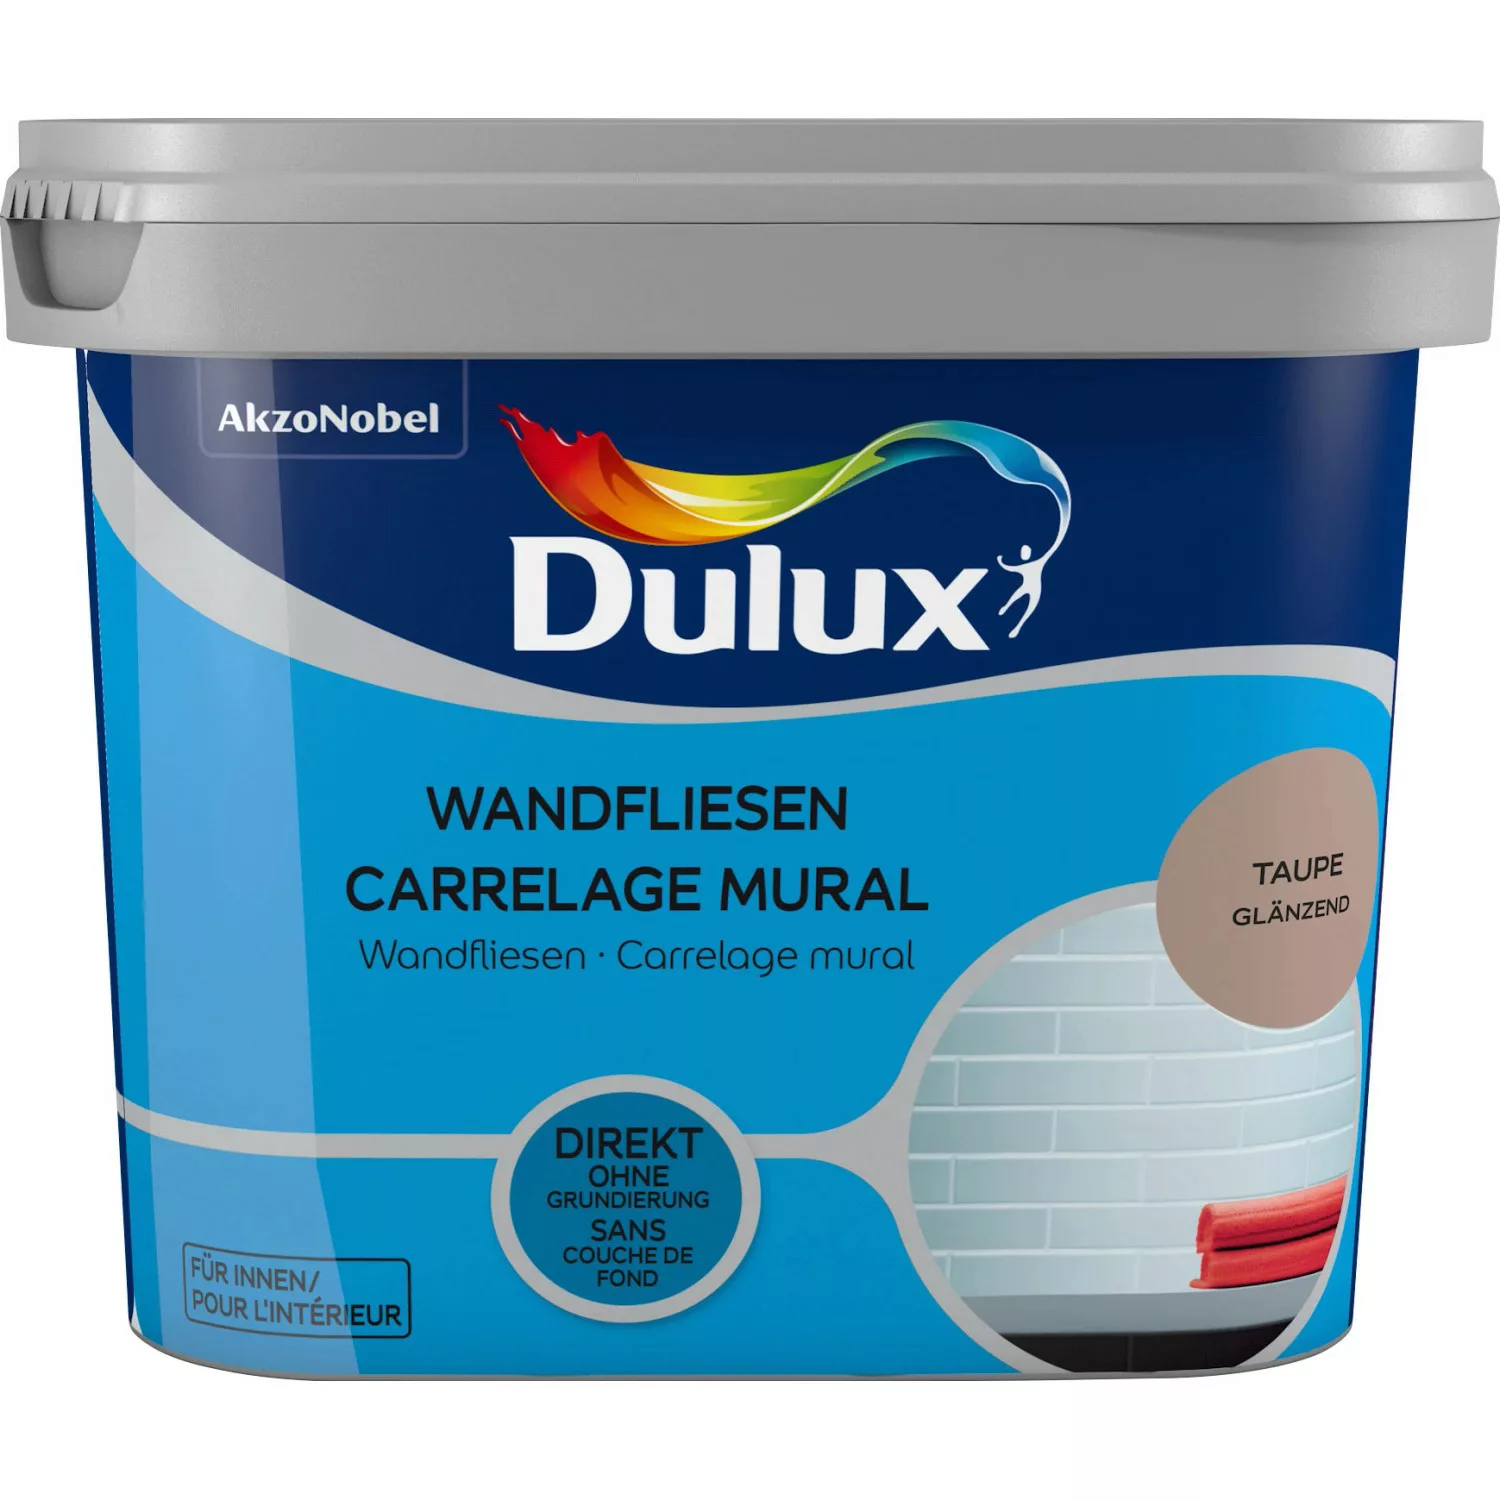 Dulux Fresh Up Wandfliesenlack Glänzend Taupe 750 ml günstig online kaufen